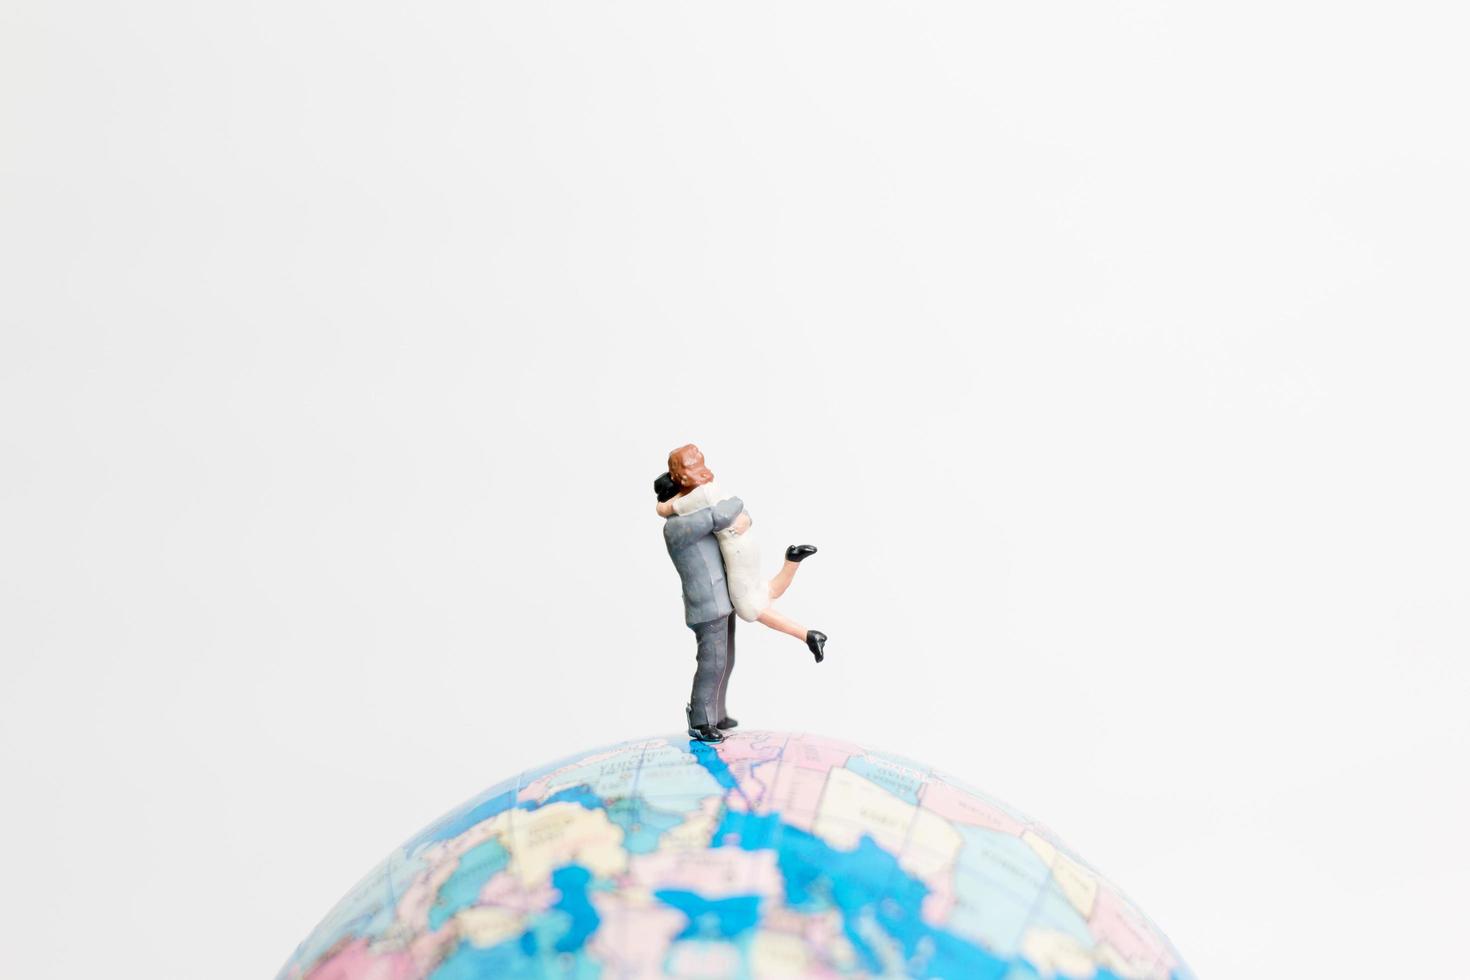 personnes miniatures debout sur un globe avec un fond blanc, concept de voyage photo